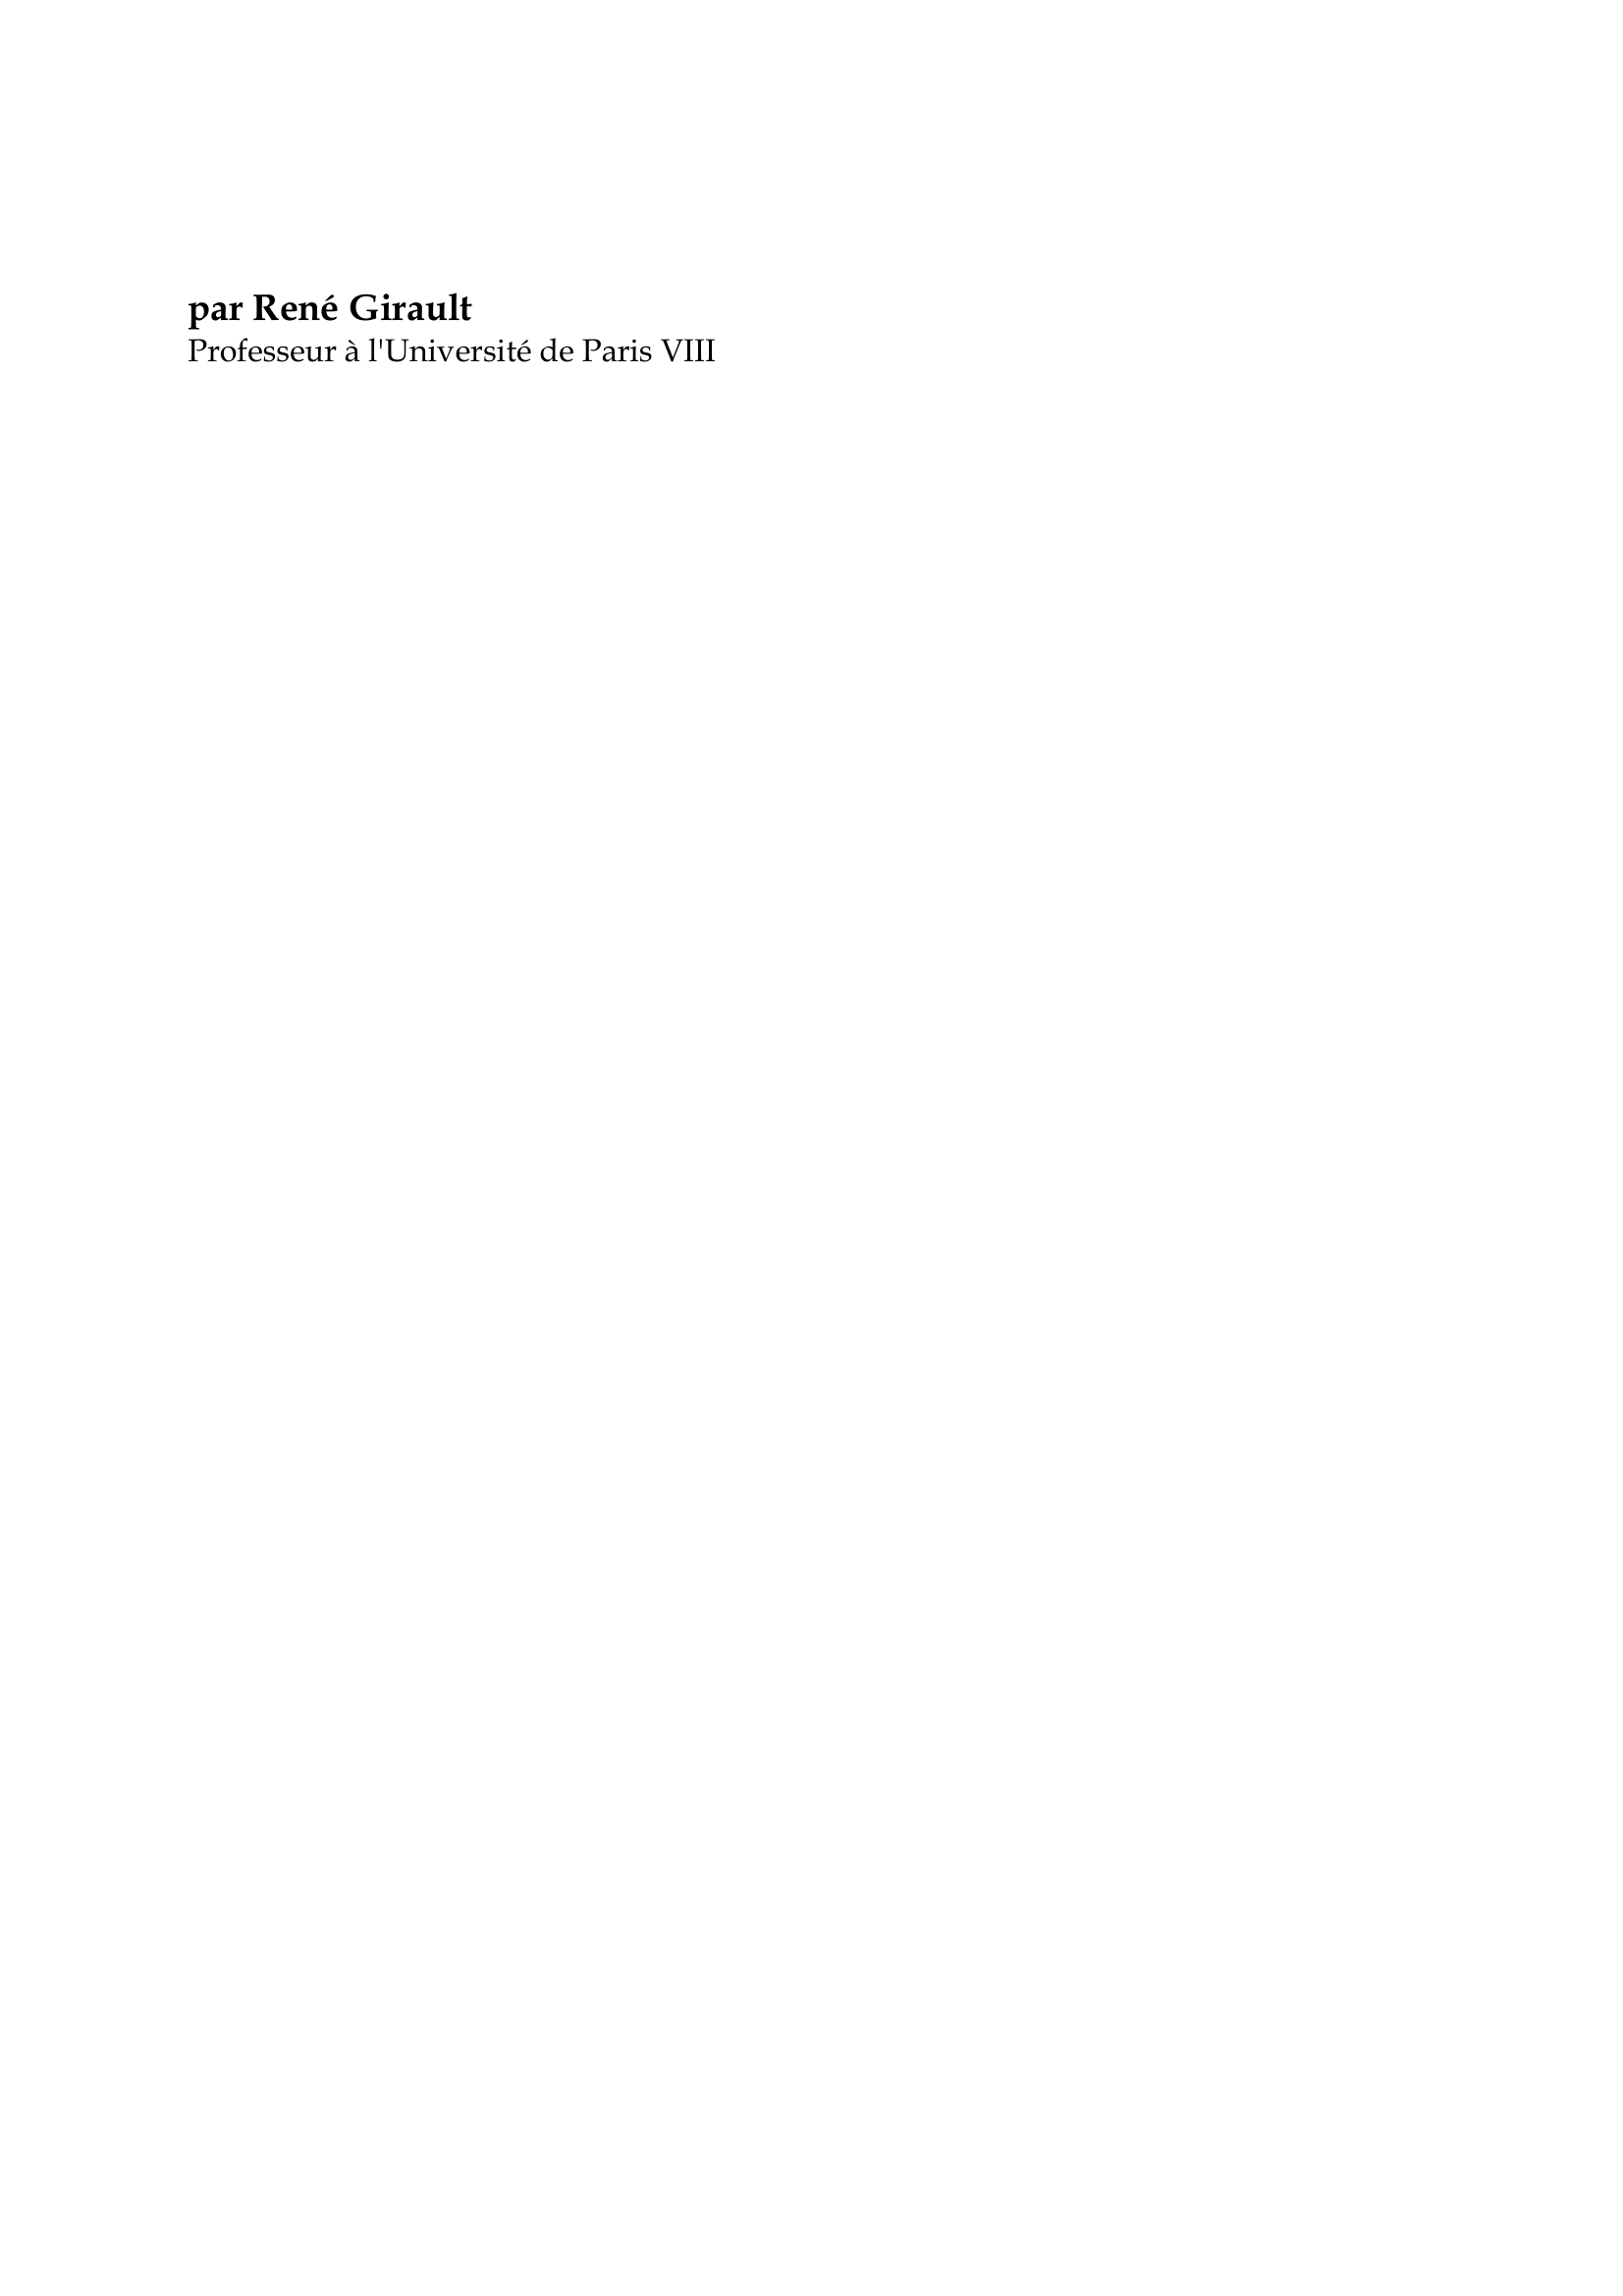 Prévisualisation du document Piotr Arkadievitch Stolypine

par René Girault
Professeur à l'Université de Paris VIII

Lorsqu'un